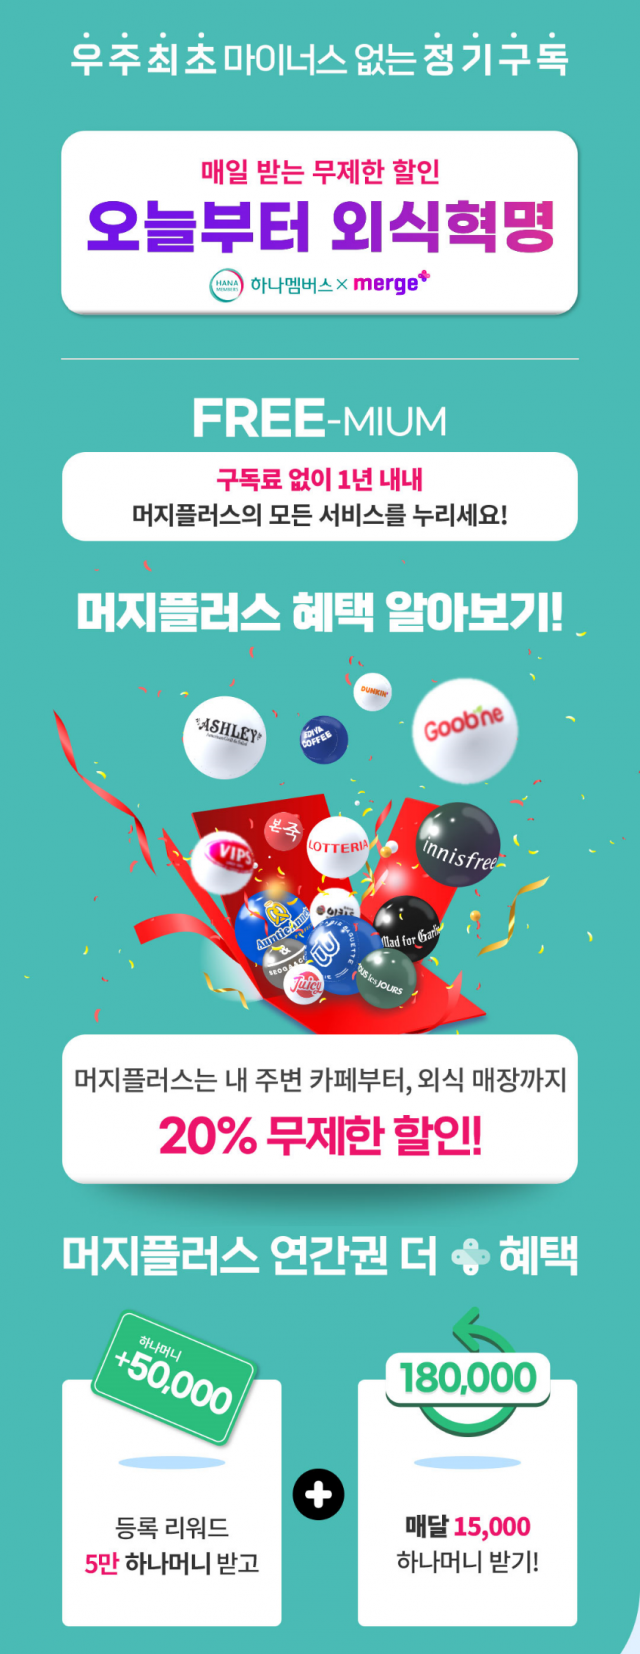 하나멤버스 ‘머지플러스 연간권 제휴 판매 이벤트’